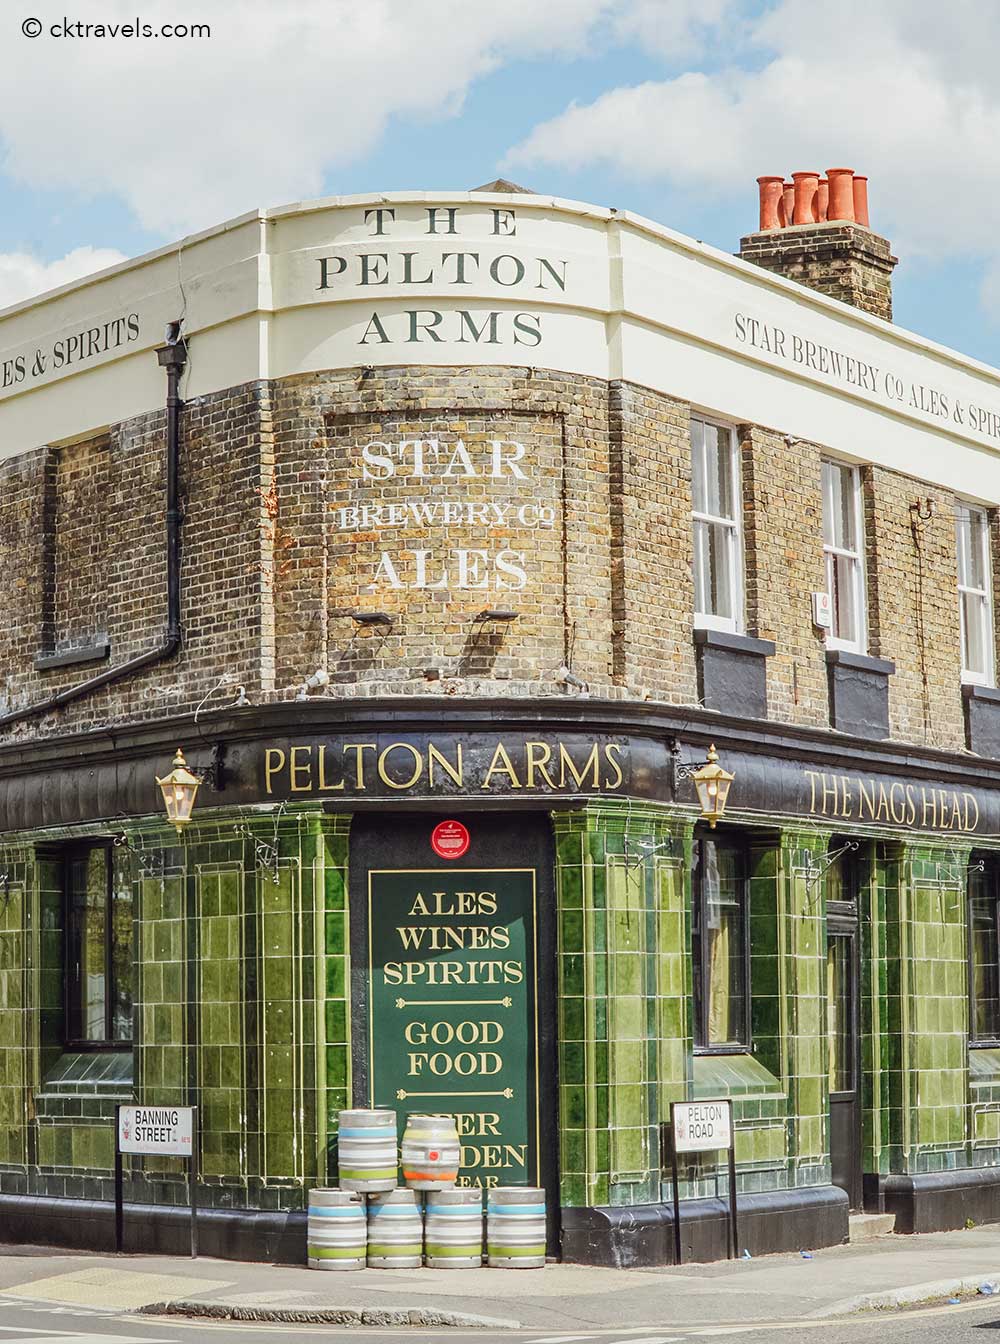 The Pelton Arms SE10 pub